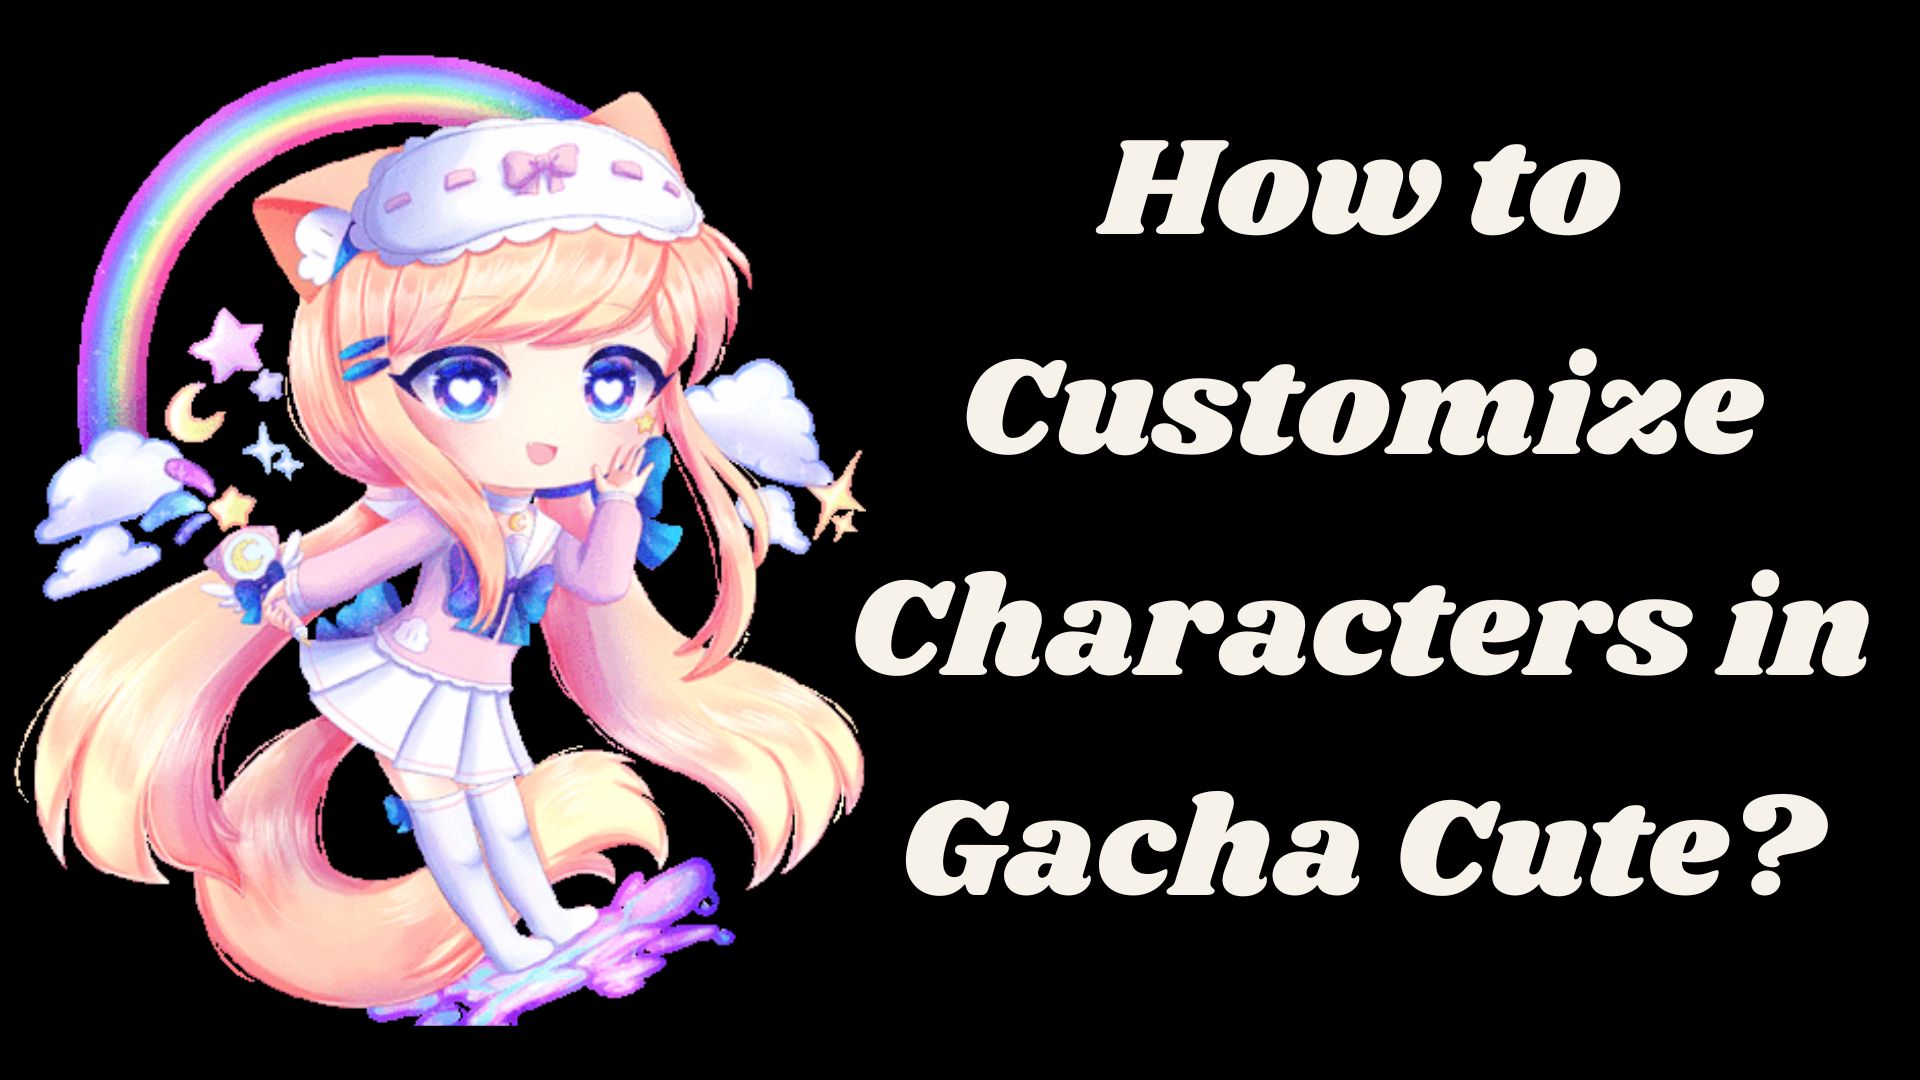 How to Customize Characters in Gacha Cute? - Gacha Cute